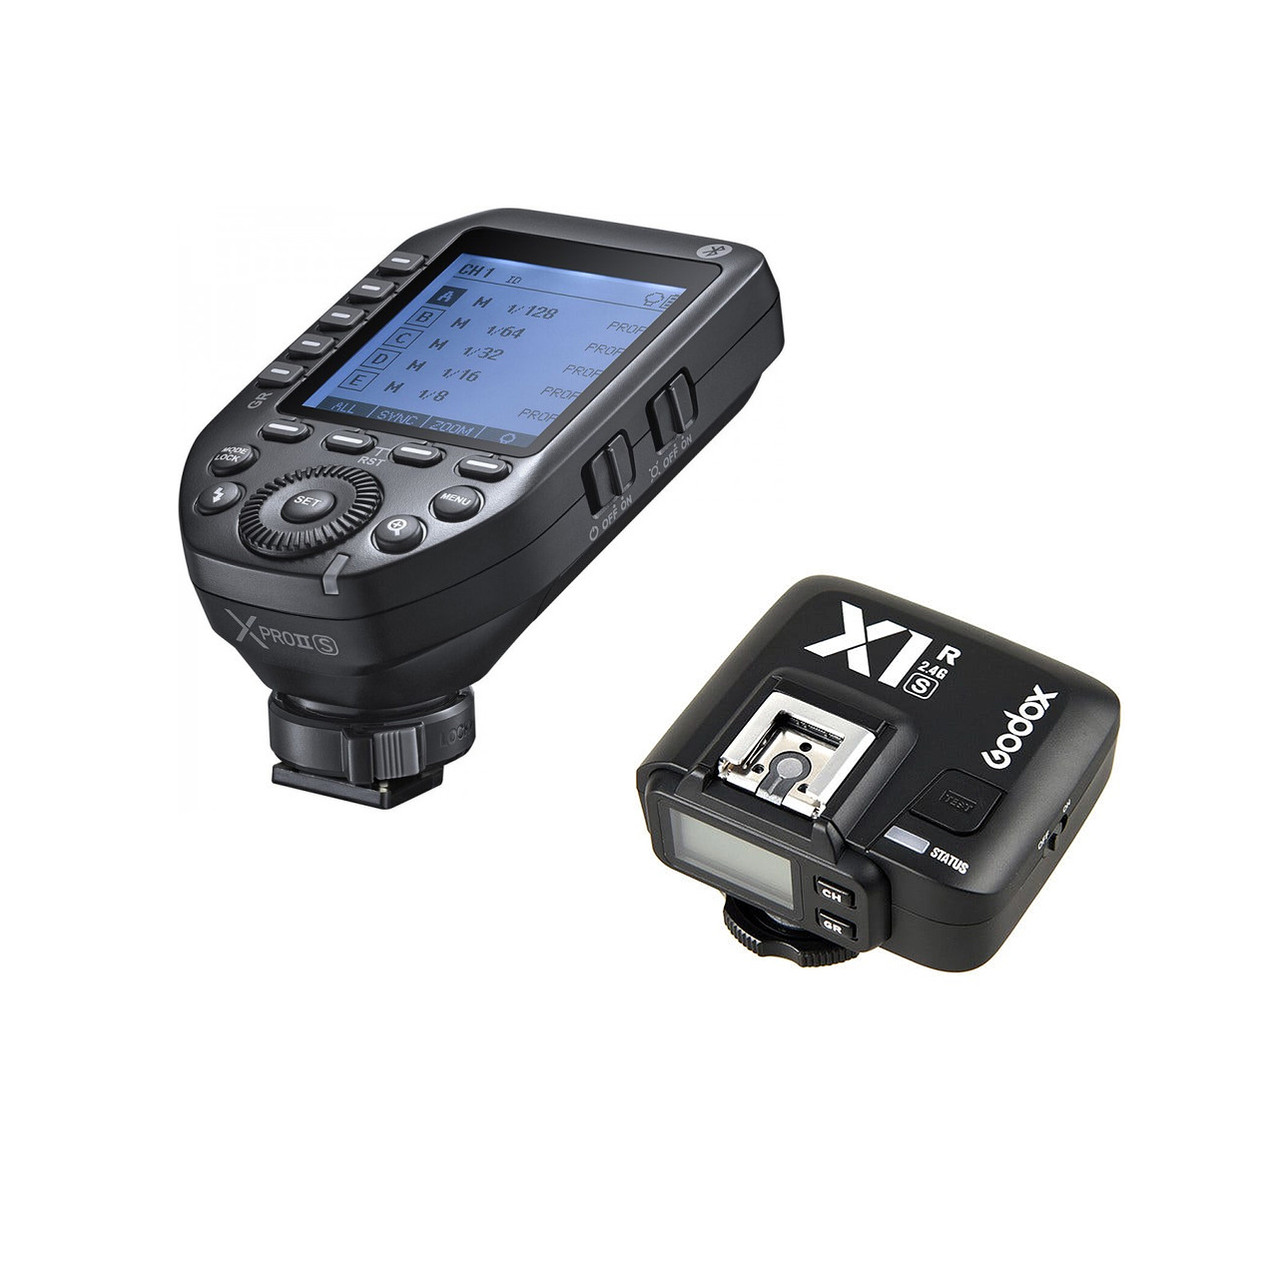 Godox Xpro-S + X1R-S TTL Wireless Flash Trigger & Receiver